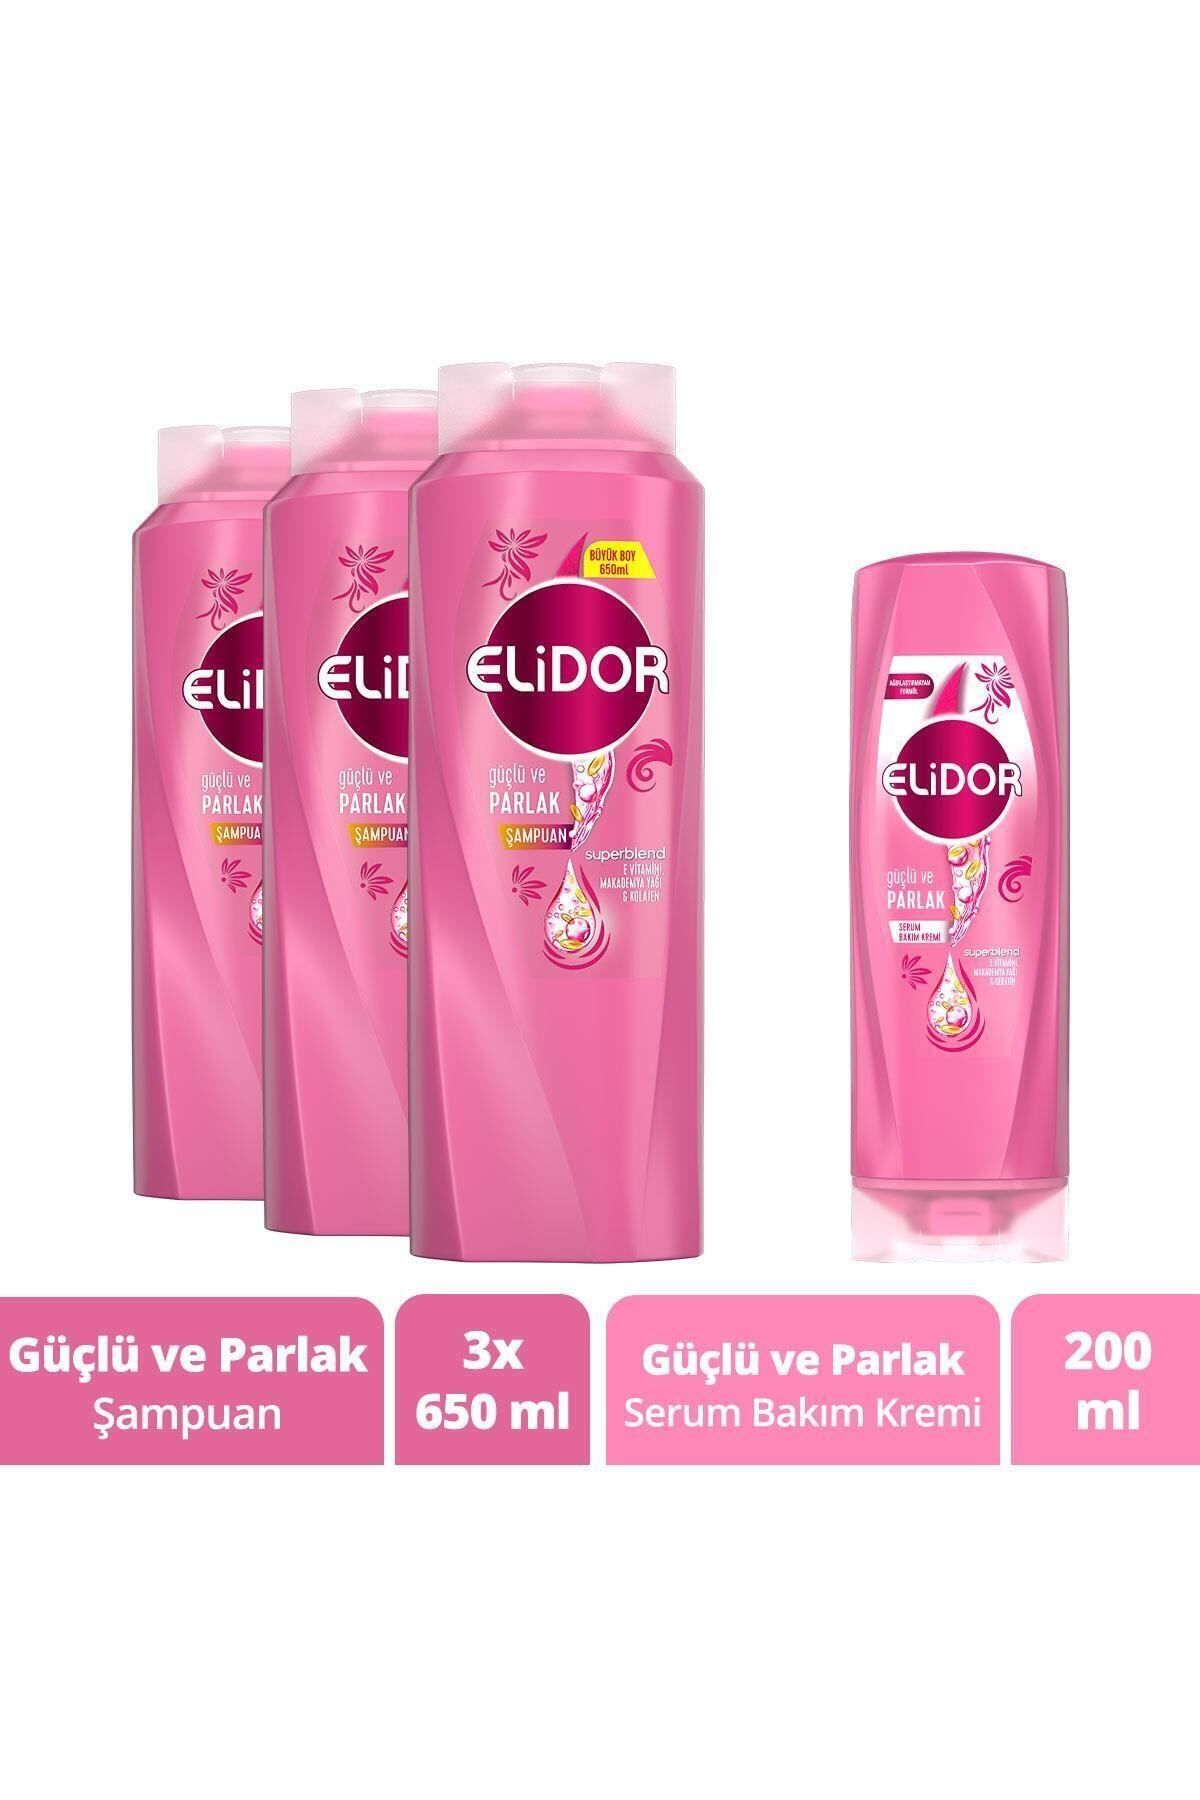 Elidor Superblend Saç Bakım Seti Güçlü ve Parlak Saçlar Şampuan 650 ml x3 + Serum Bakım Kremi 200 ml